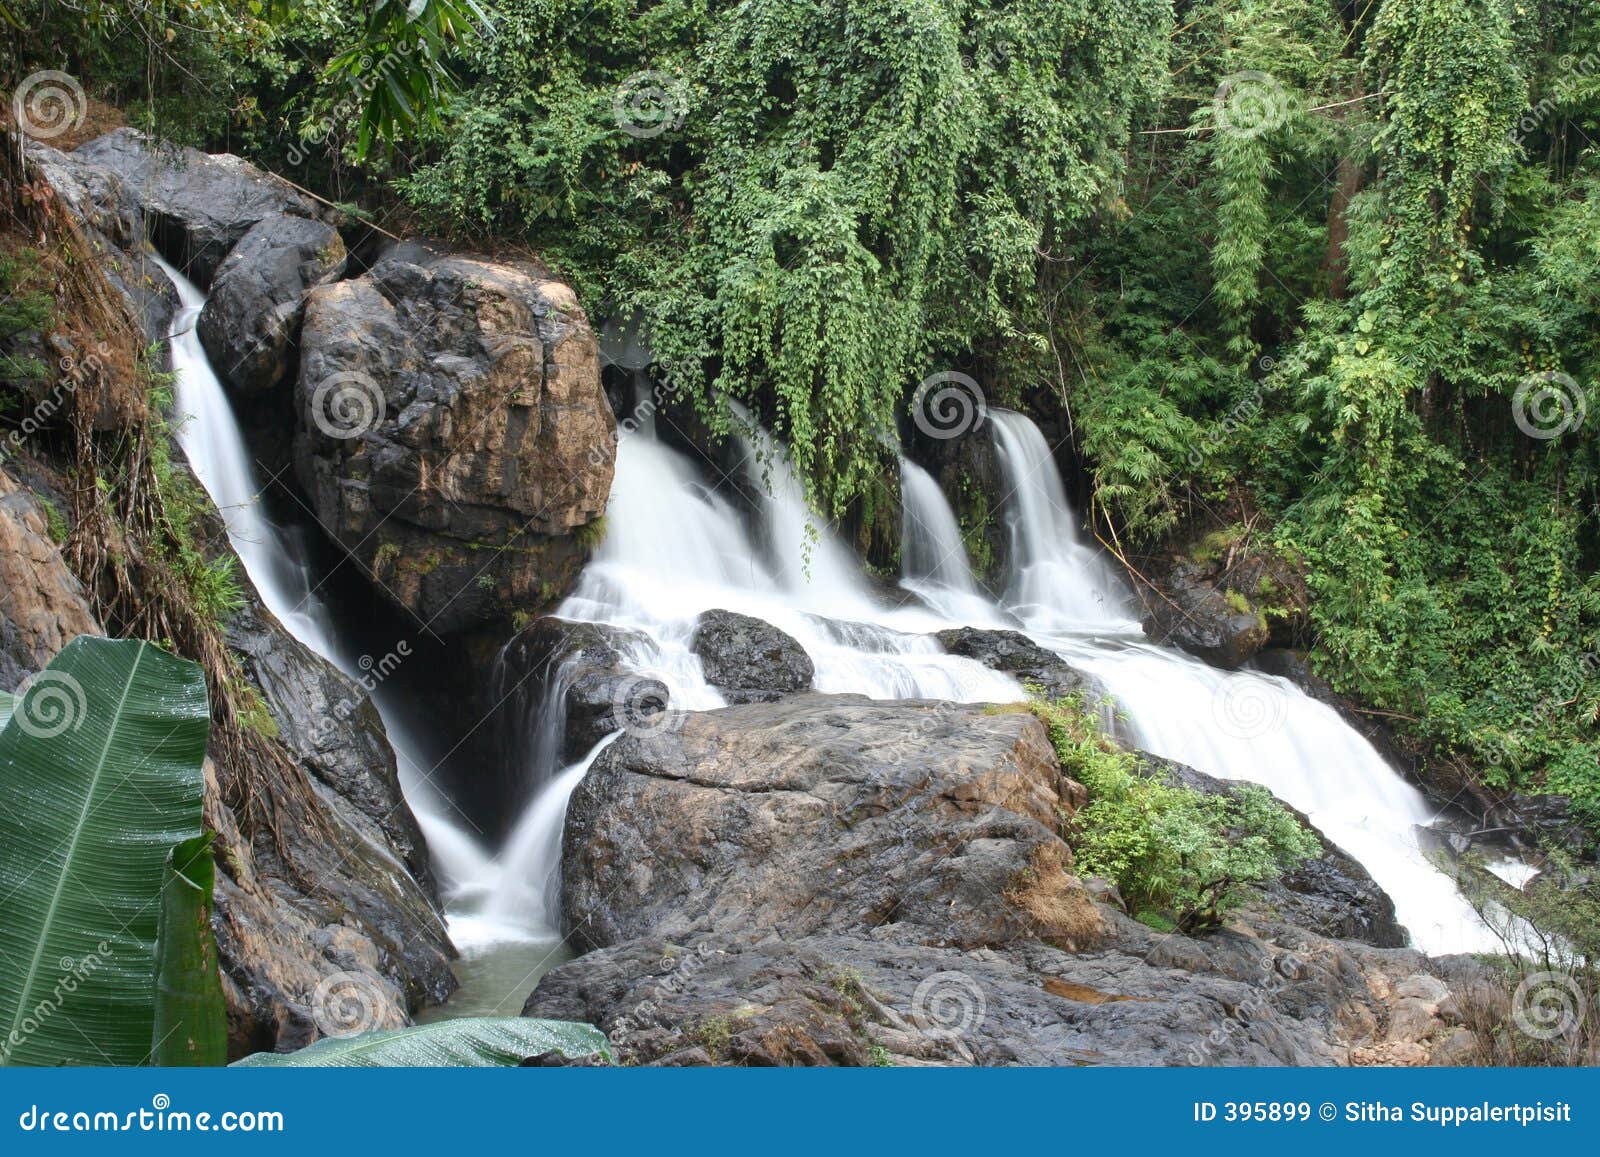 pha suer waterfall, mae hong son, thailand